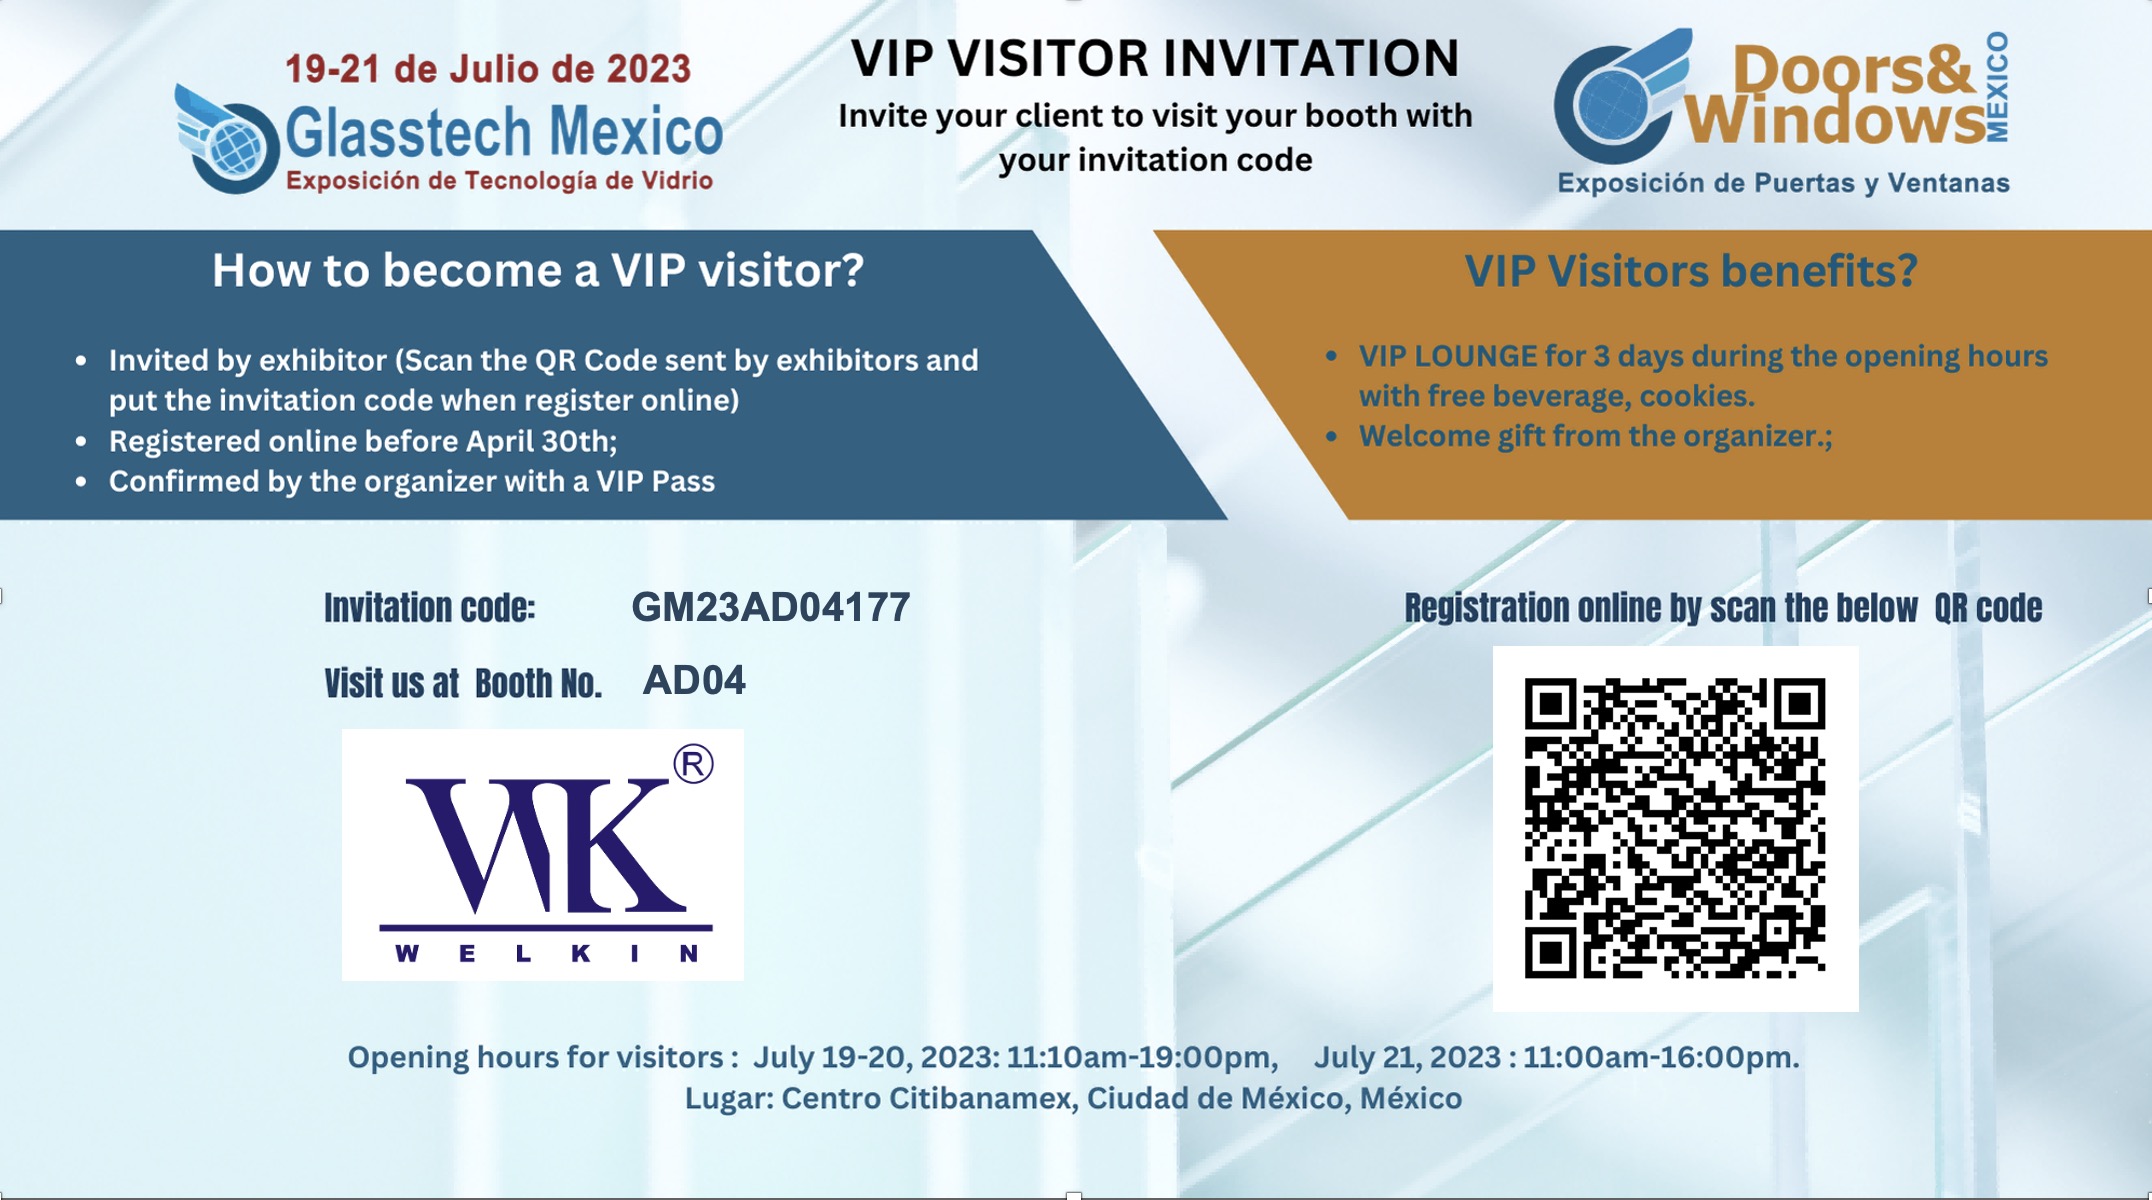 Glasstech Mexico 19-21 de Julio de 2023